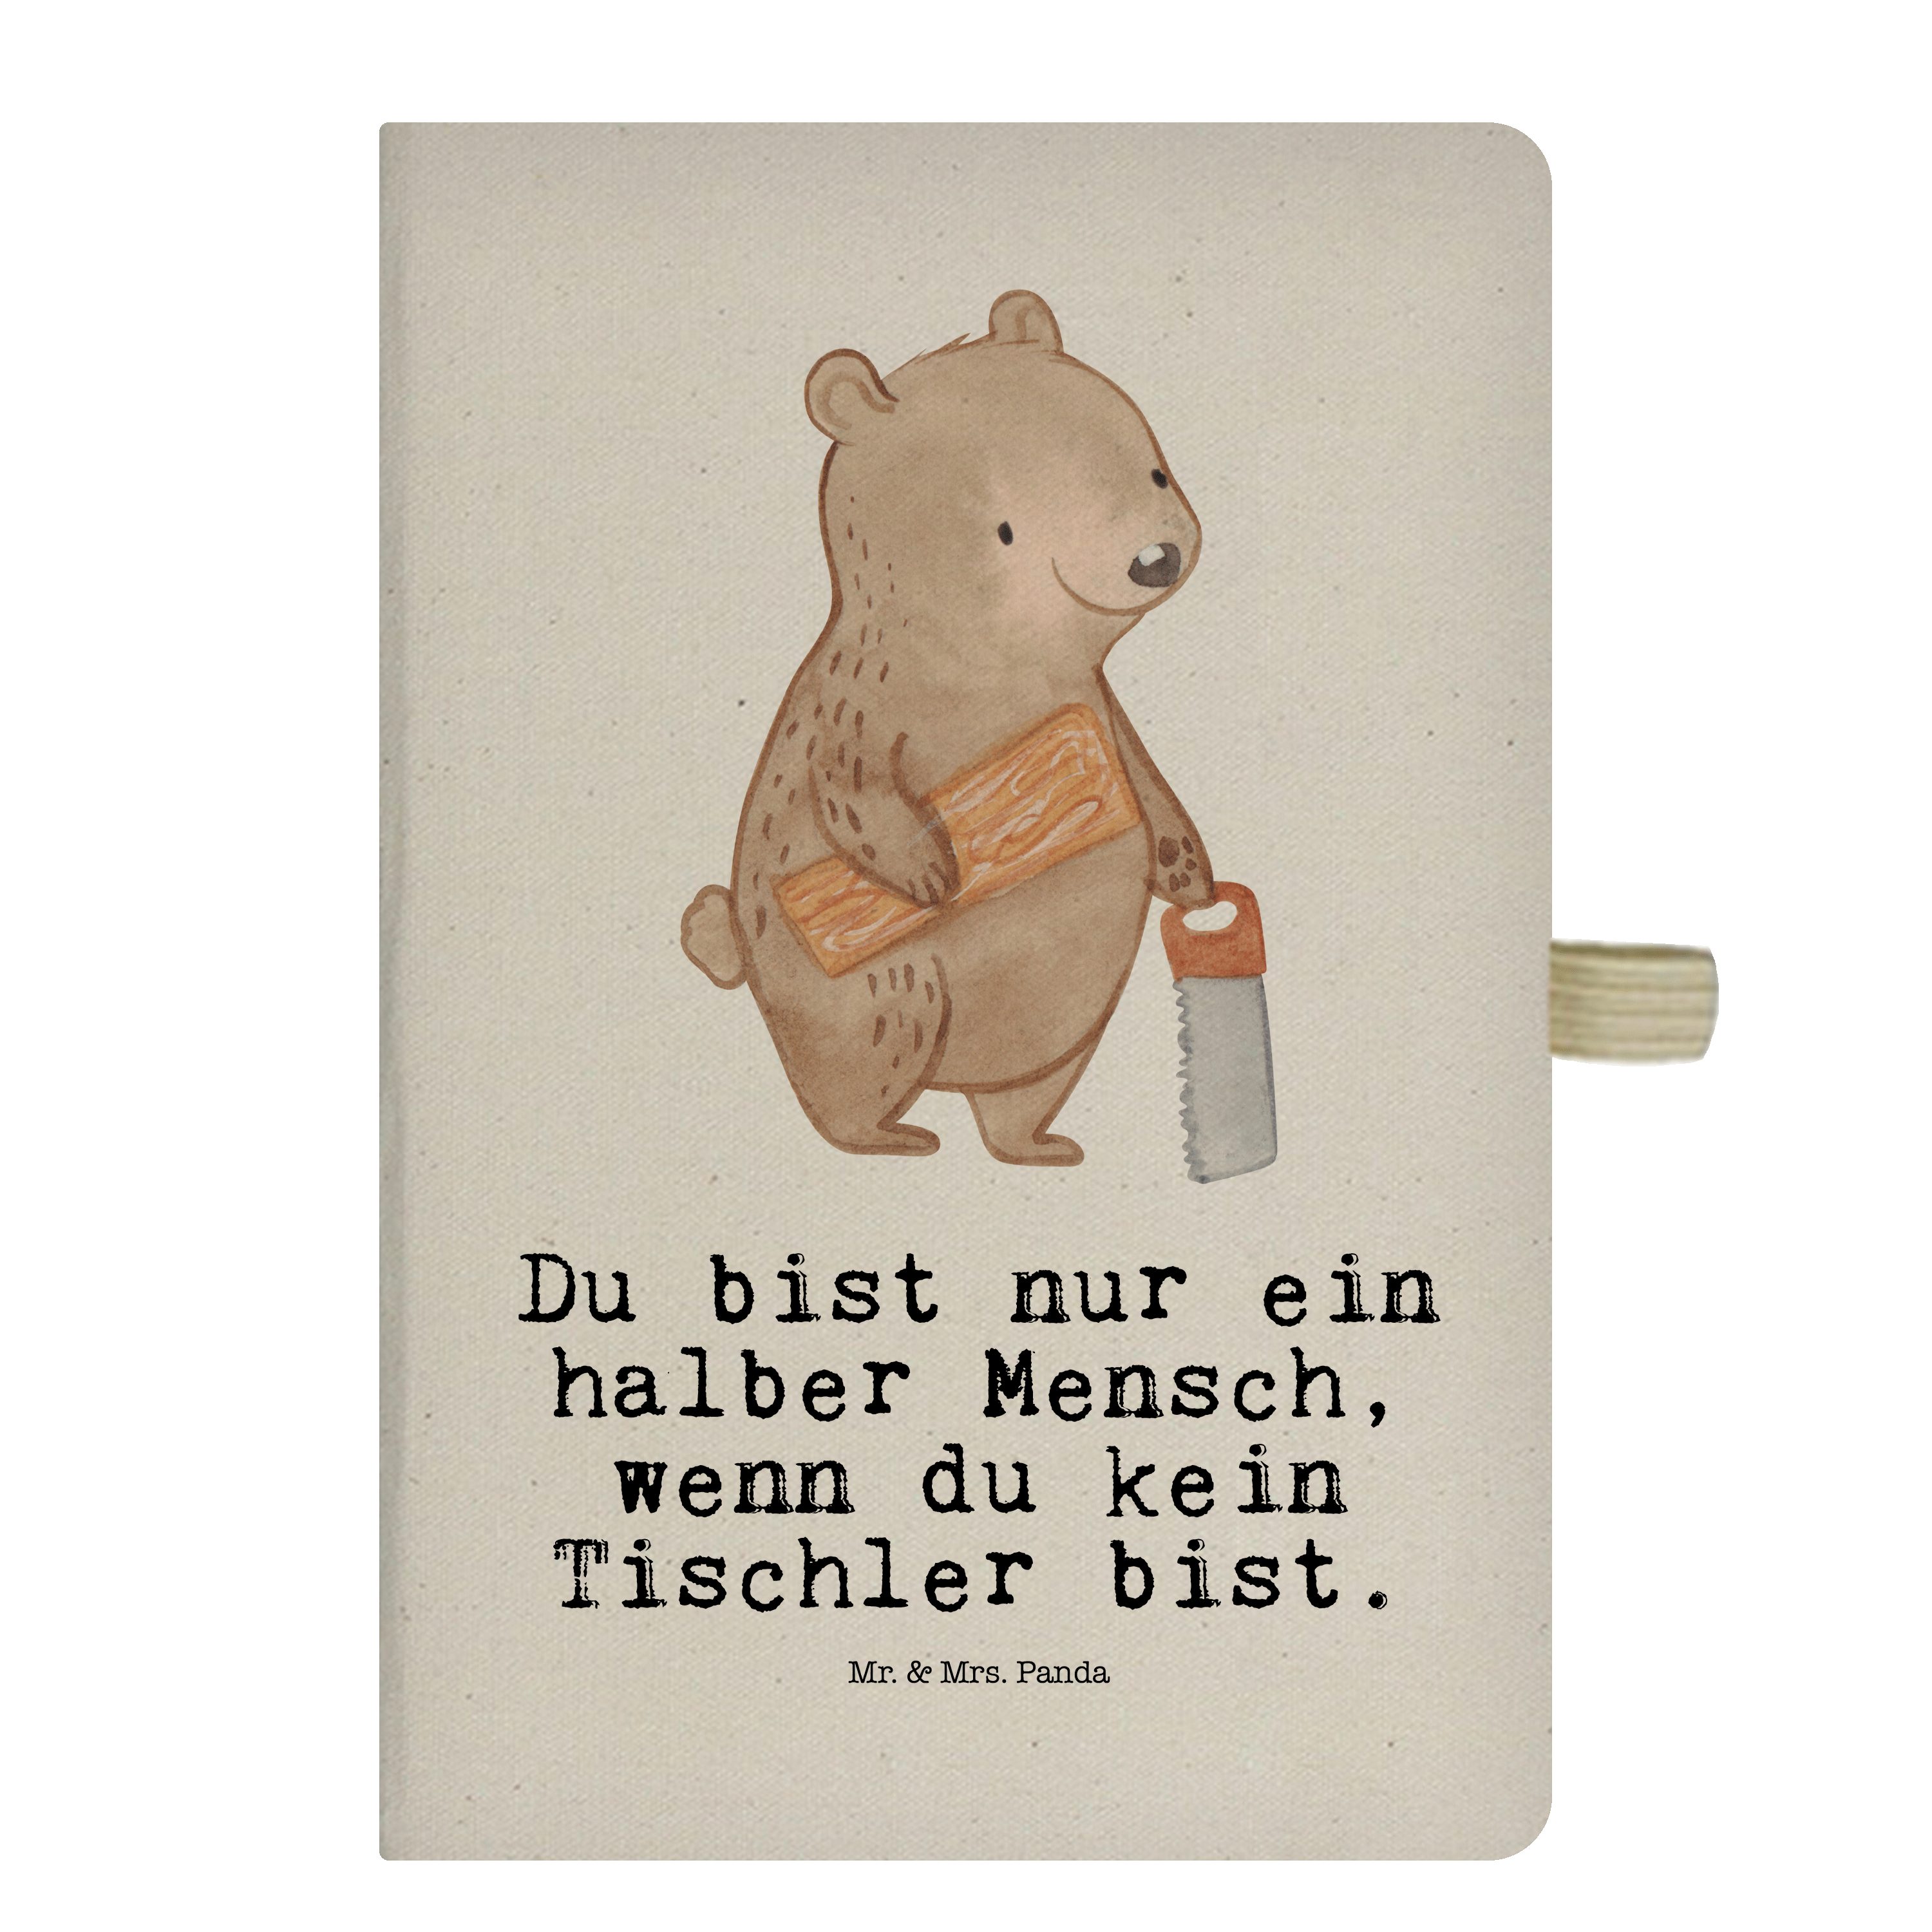 Mr. & Mrs. Panda Notizbuch Tischler mit Herz - Transparent - Geschenk, Tagebuch, Schreibbuch, Ad Mr. & Mrs. Panda